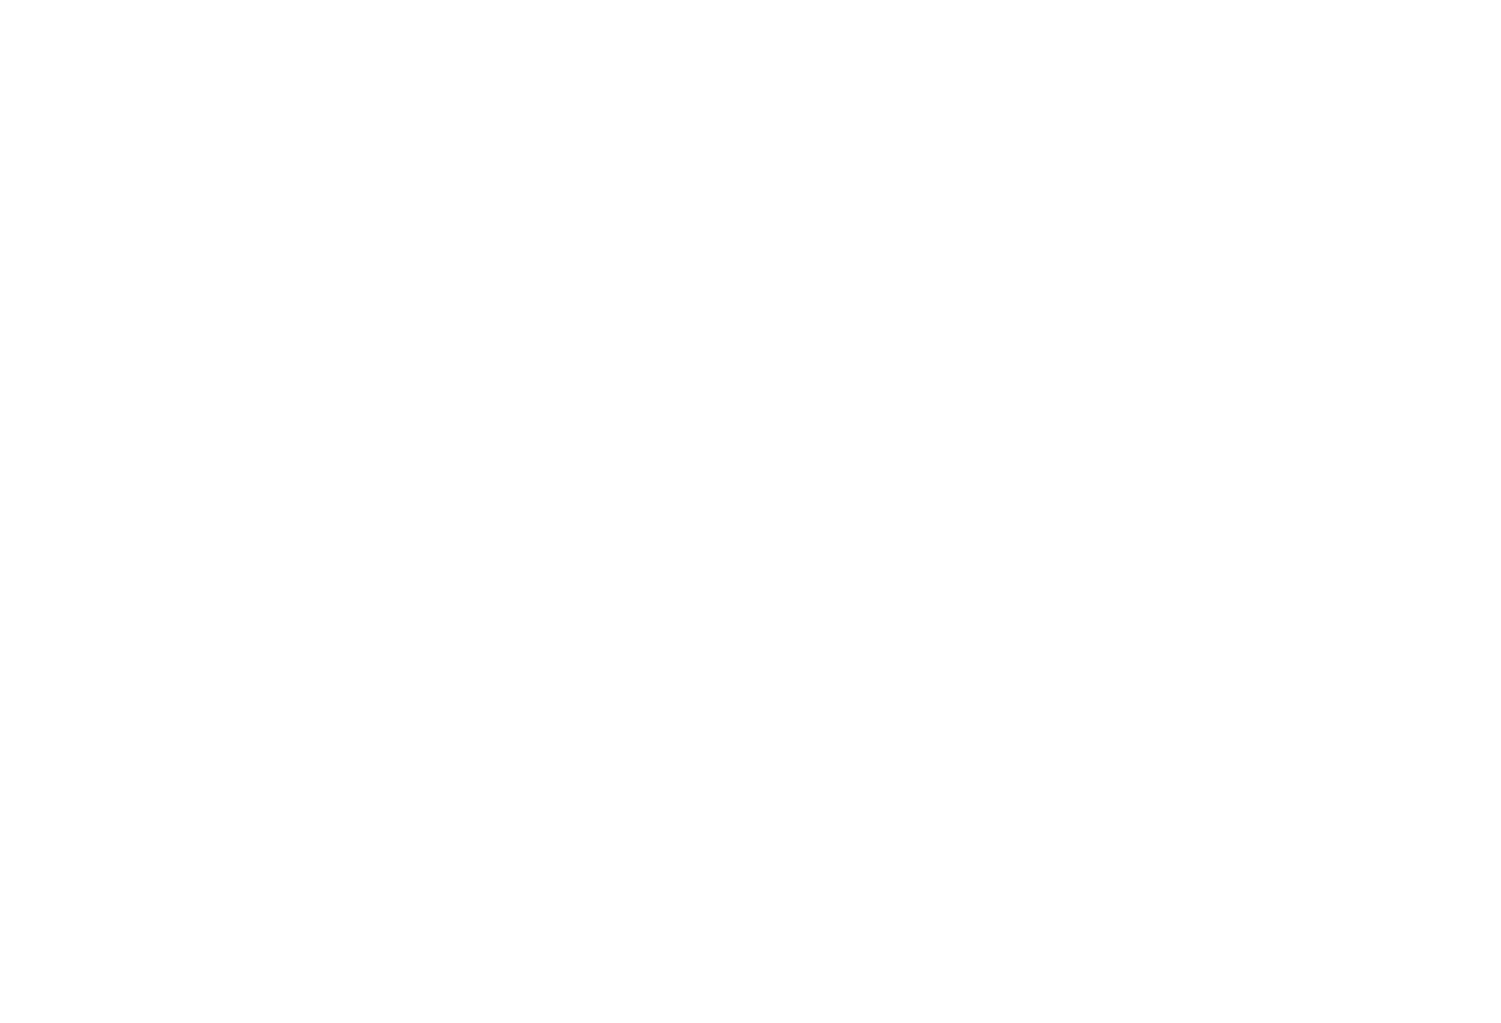 UPES-ACM